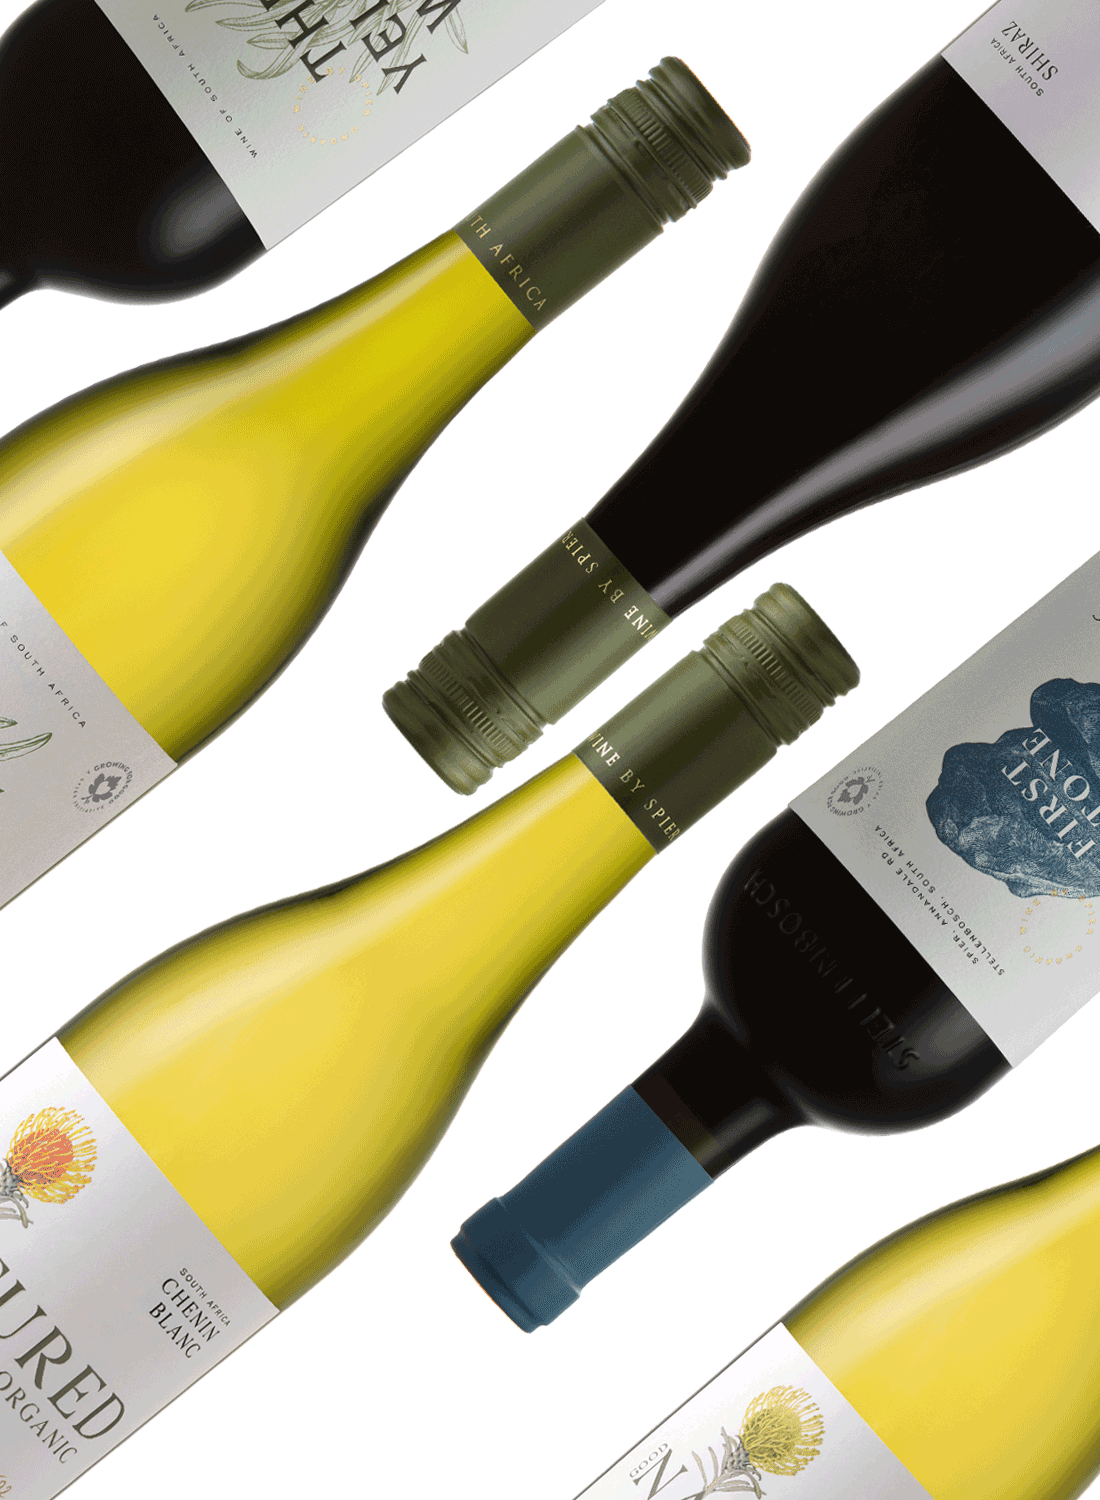 Spier Organic Wines Tasting Package